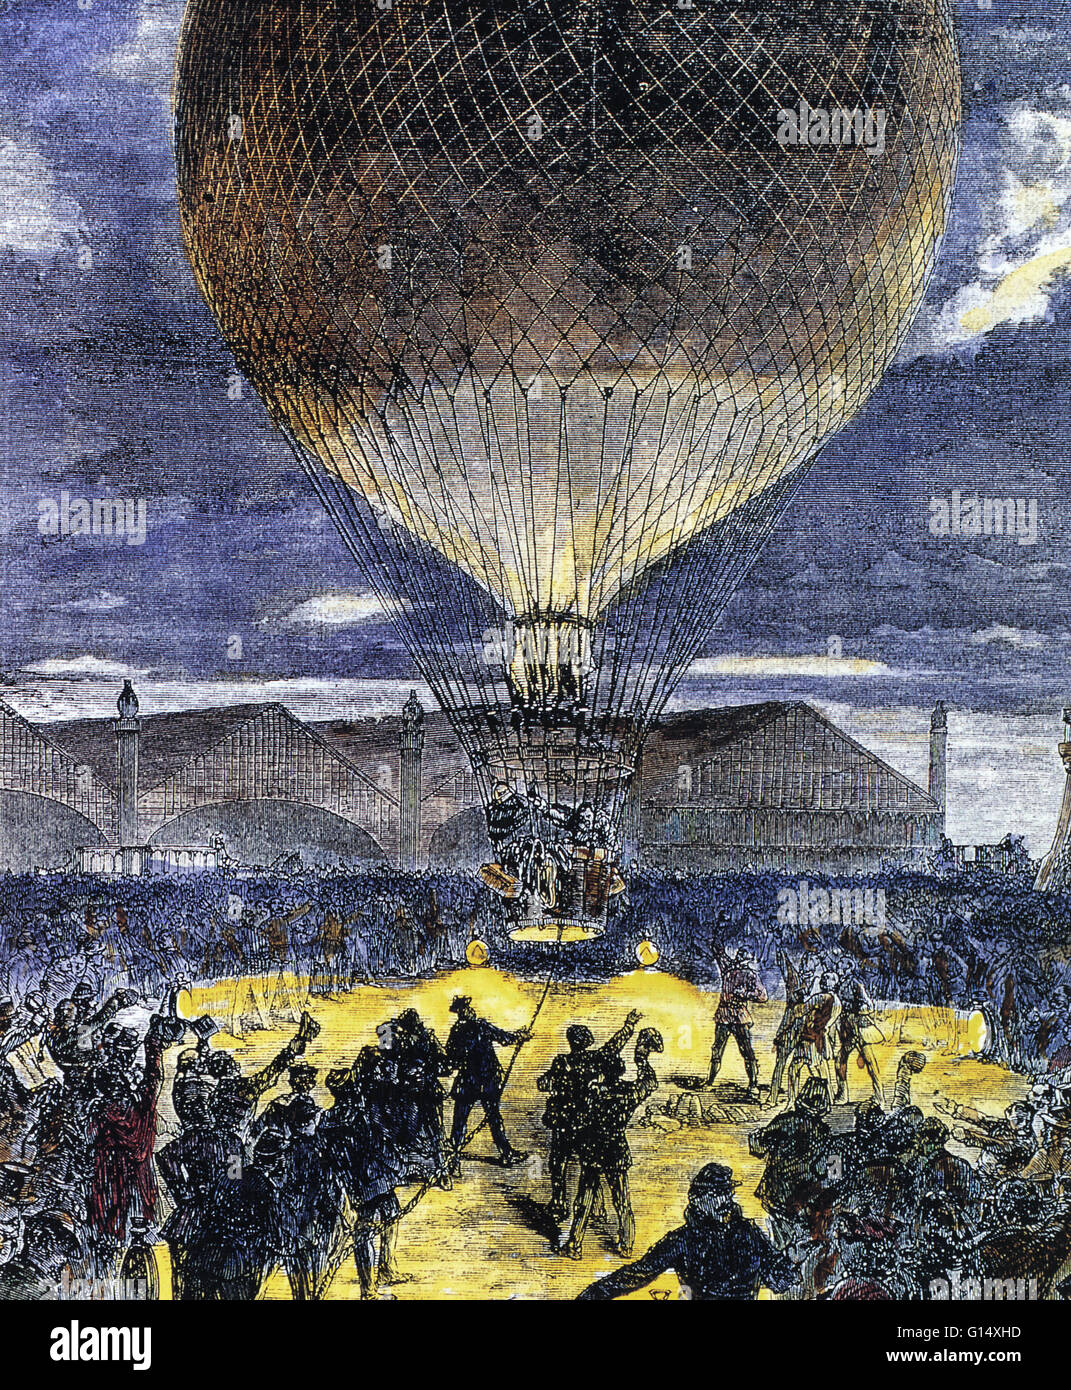 Le lancement d'un ballon rempli d'hydrogène. Ballons gonflés à l'hydrogène ont été utilisées pour voler au-dessus d'un territoire ennemi pendant la guerre franco-prussienne (1870-1871). Ils étaient aussi utilisés pour transporter des personnes hors de Paris au cours de ce conflit. Banque D'Images